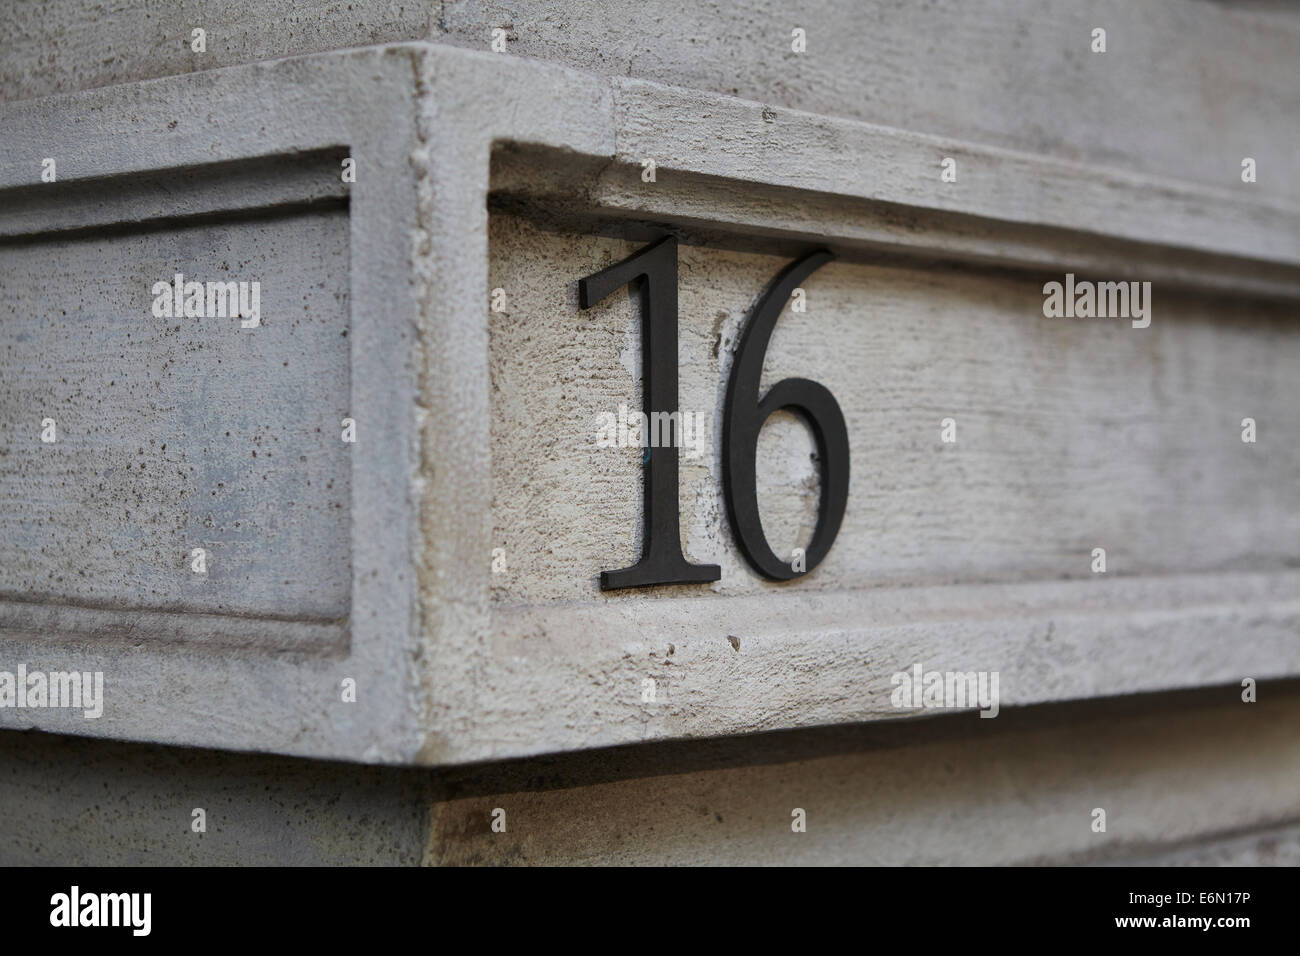 London-Texturen, typischen grauen Stein: Gebäude Ecke. Stockfoto